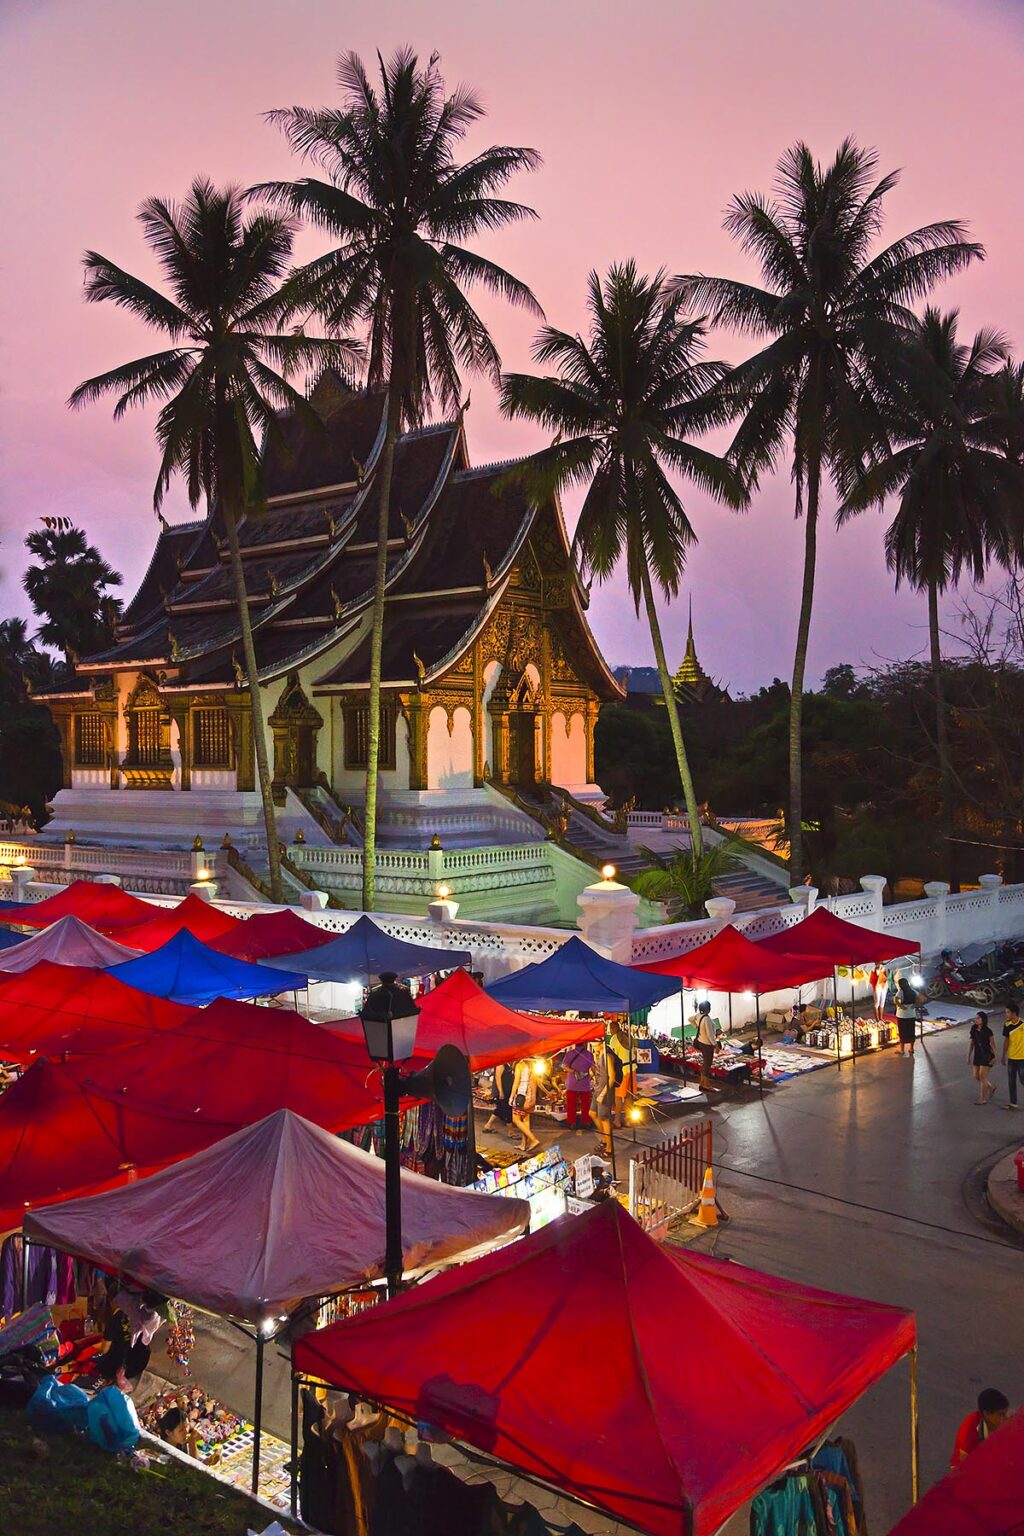 The HAW PHA BANG or Royal Temple sits above the famous NIGHT MARKET - LUANG PRABANG, LAOS